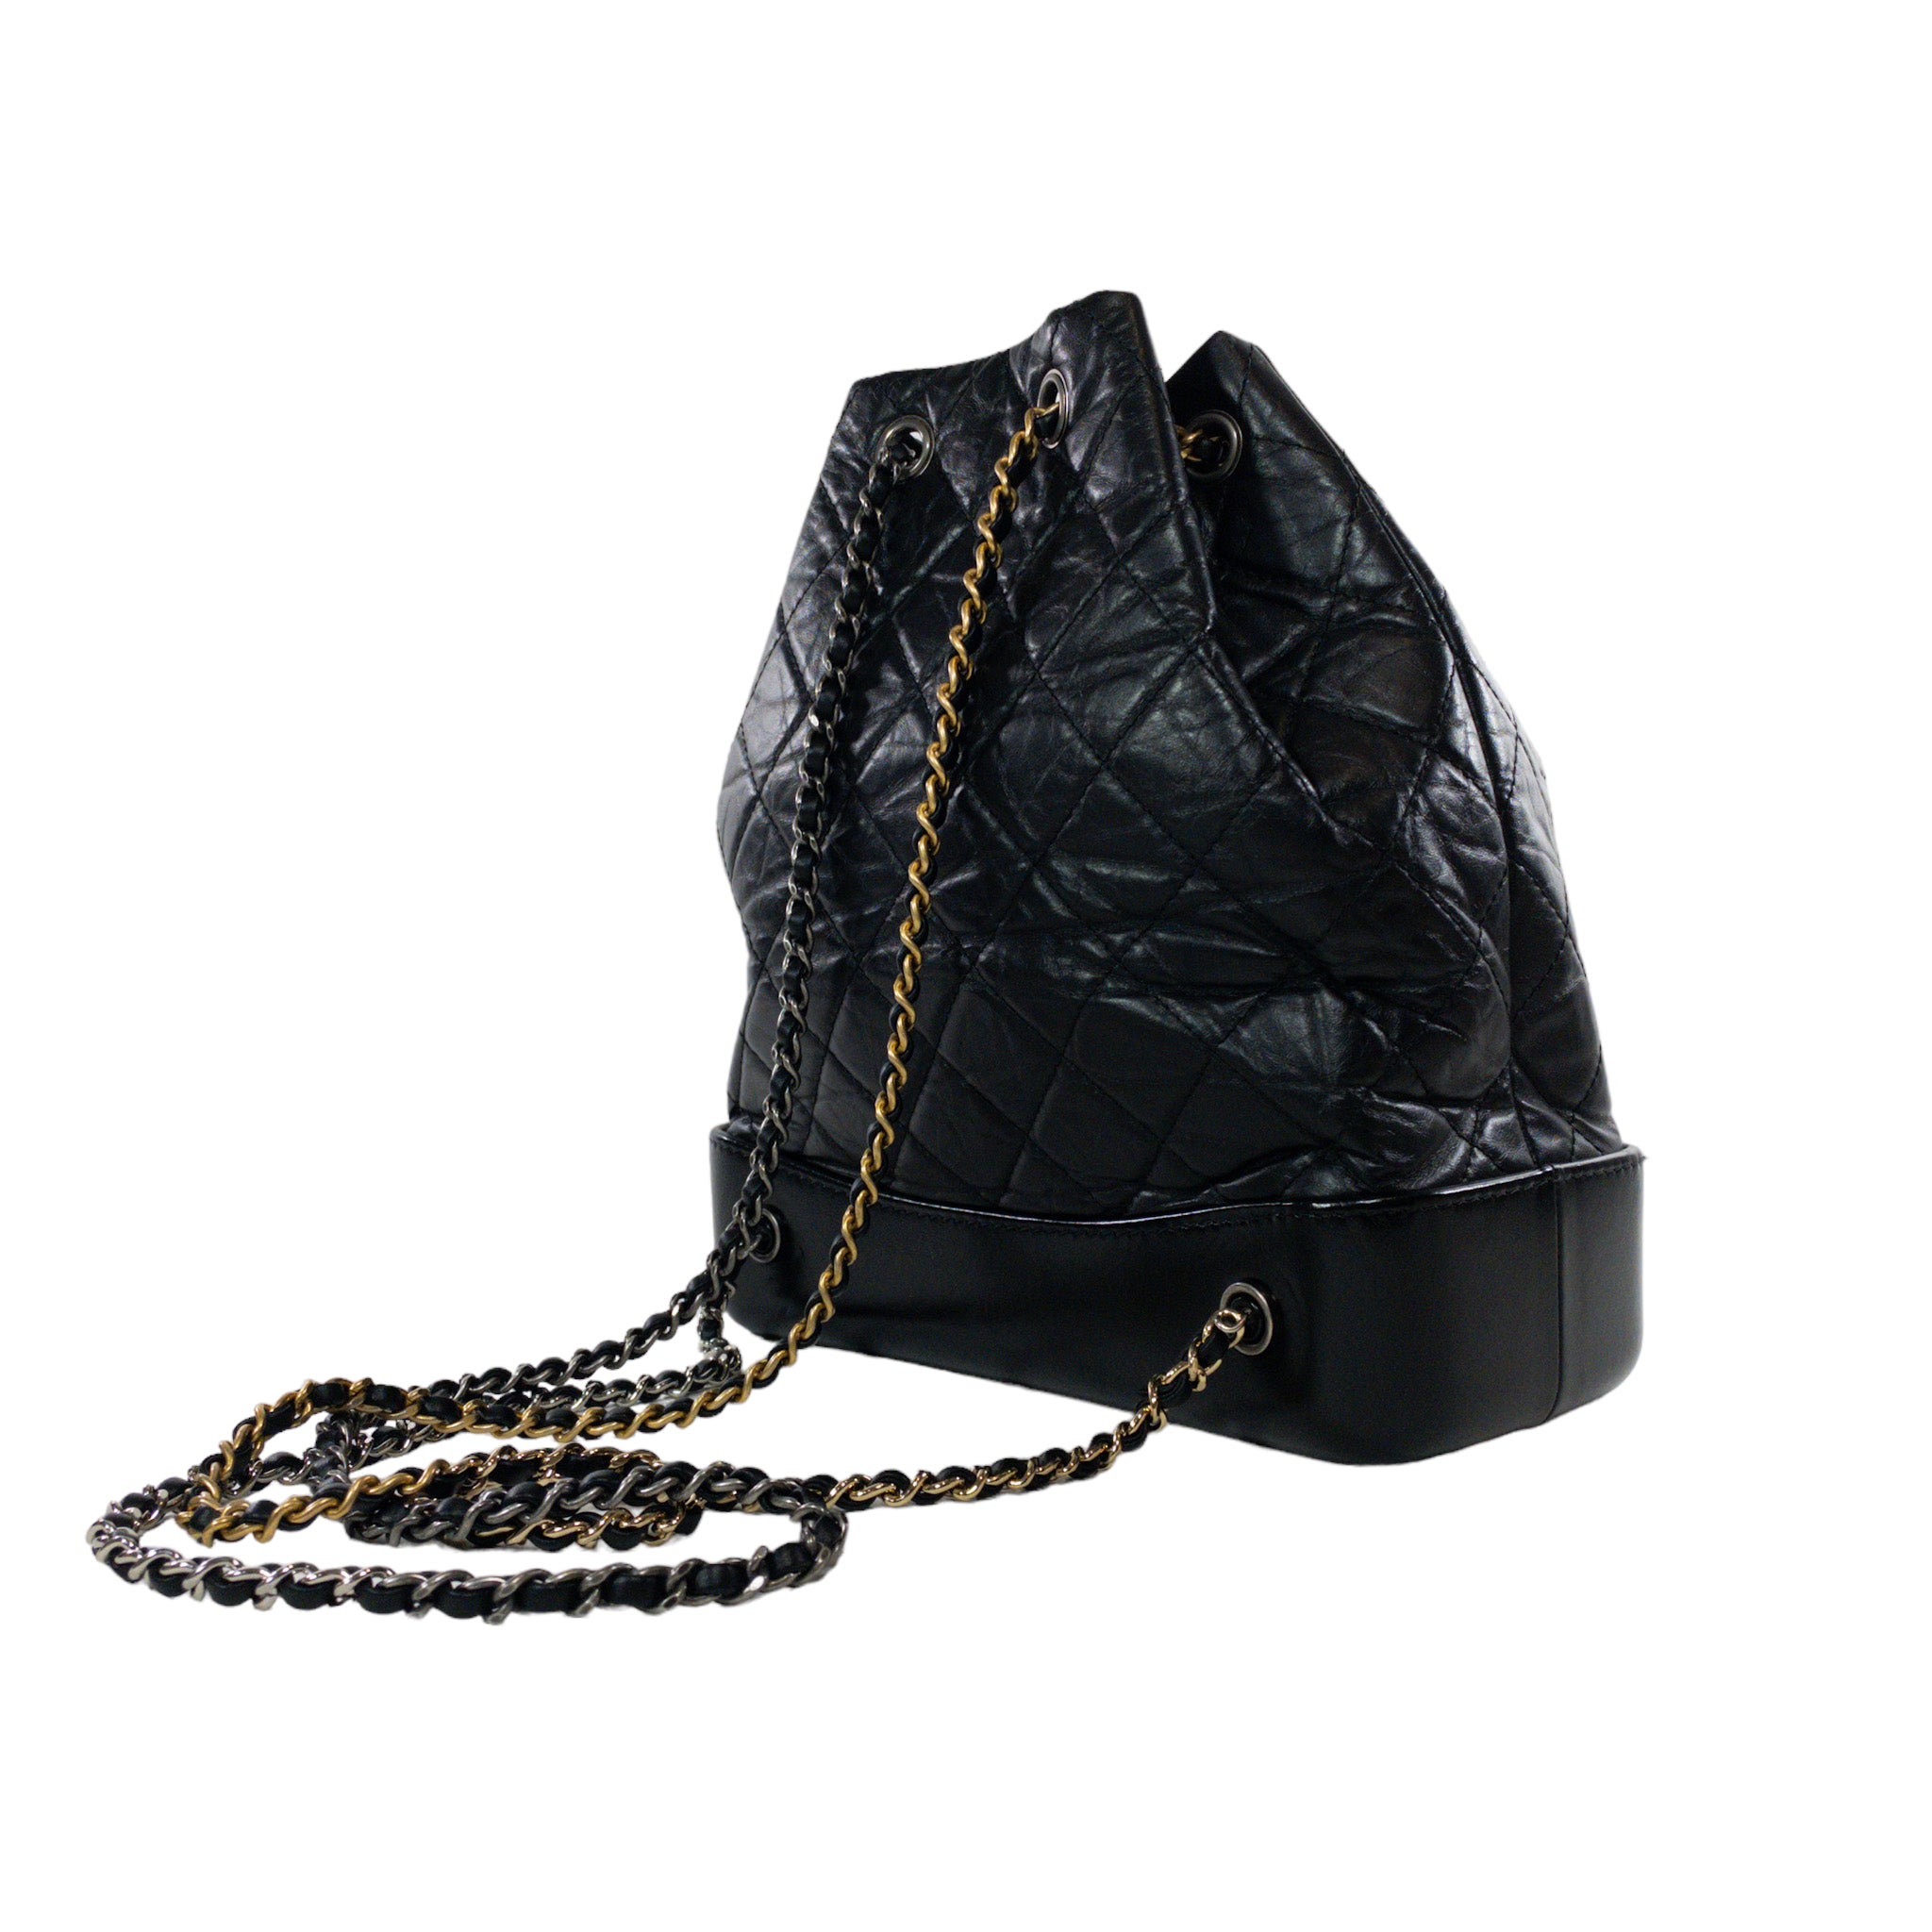 4 Classic Chanel Bags Fashion Insiders Always Wear